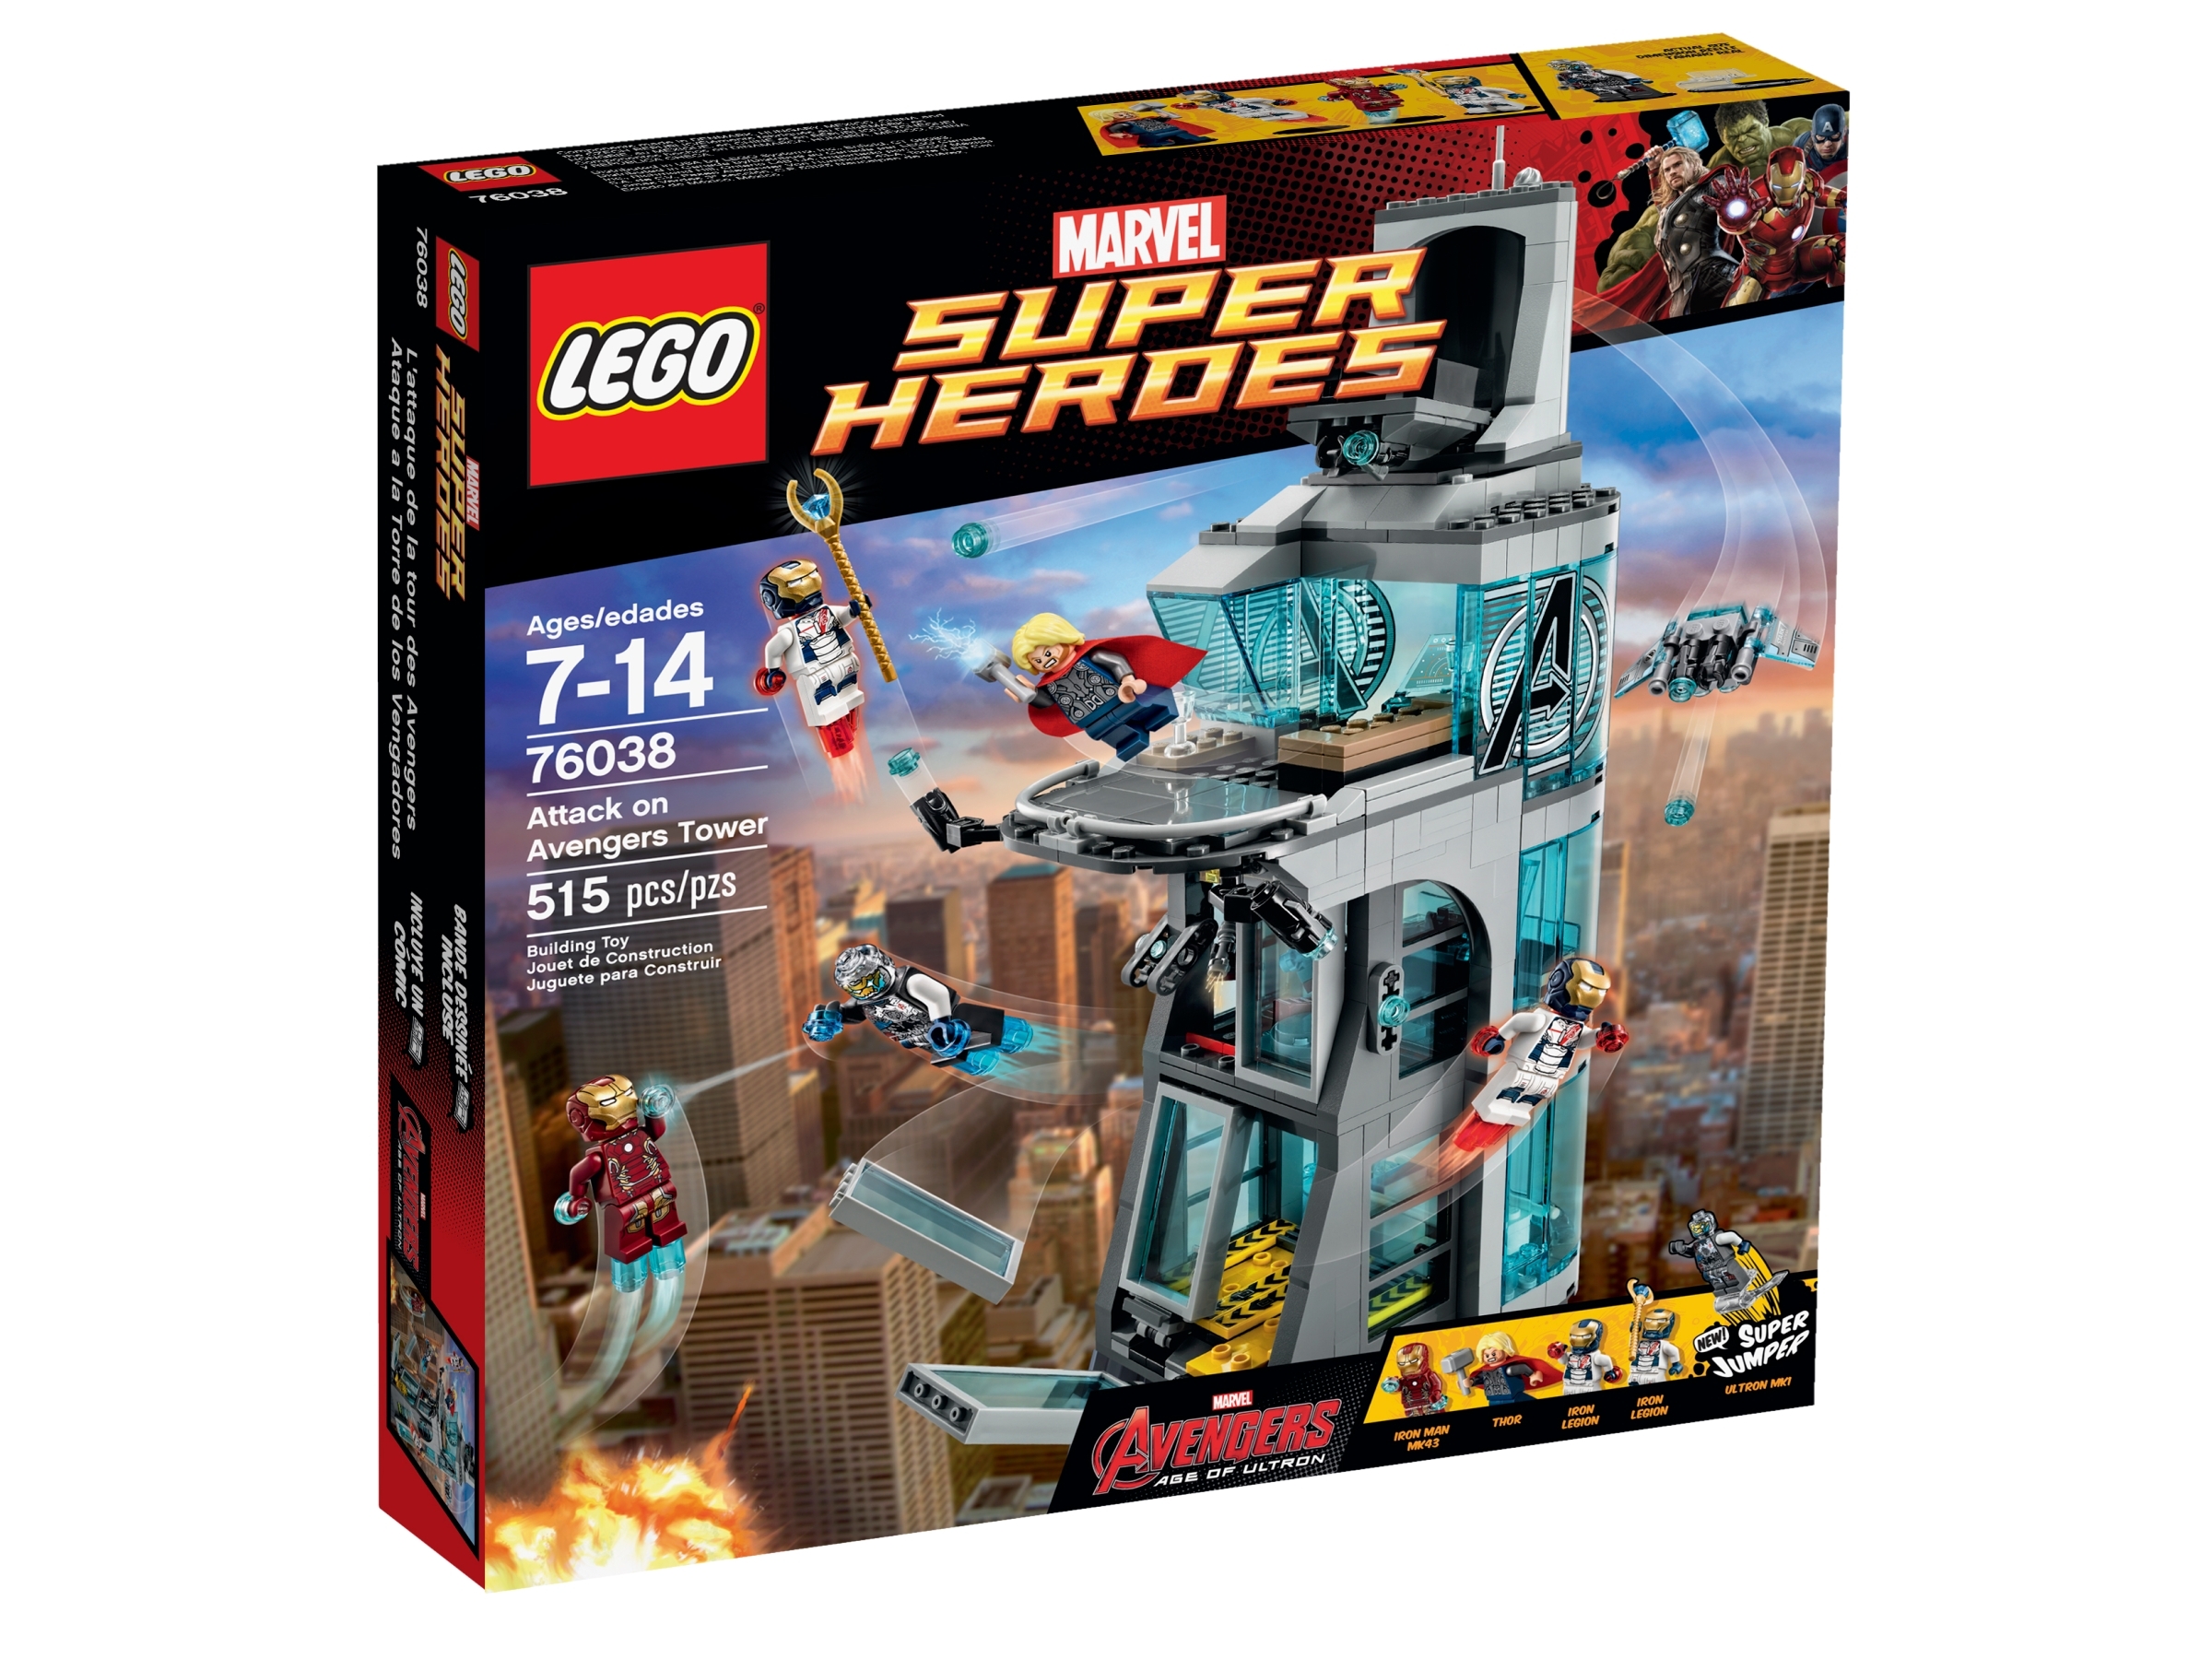 Avengers Lego Stark Tower vlr.eng.br